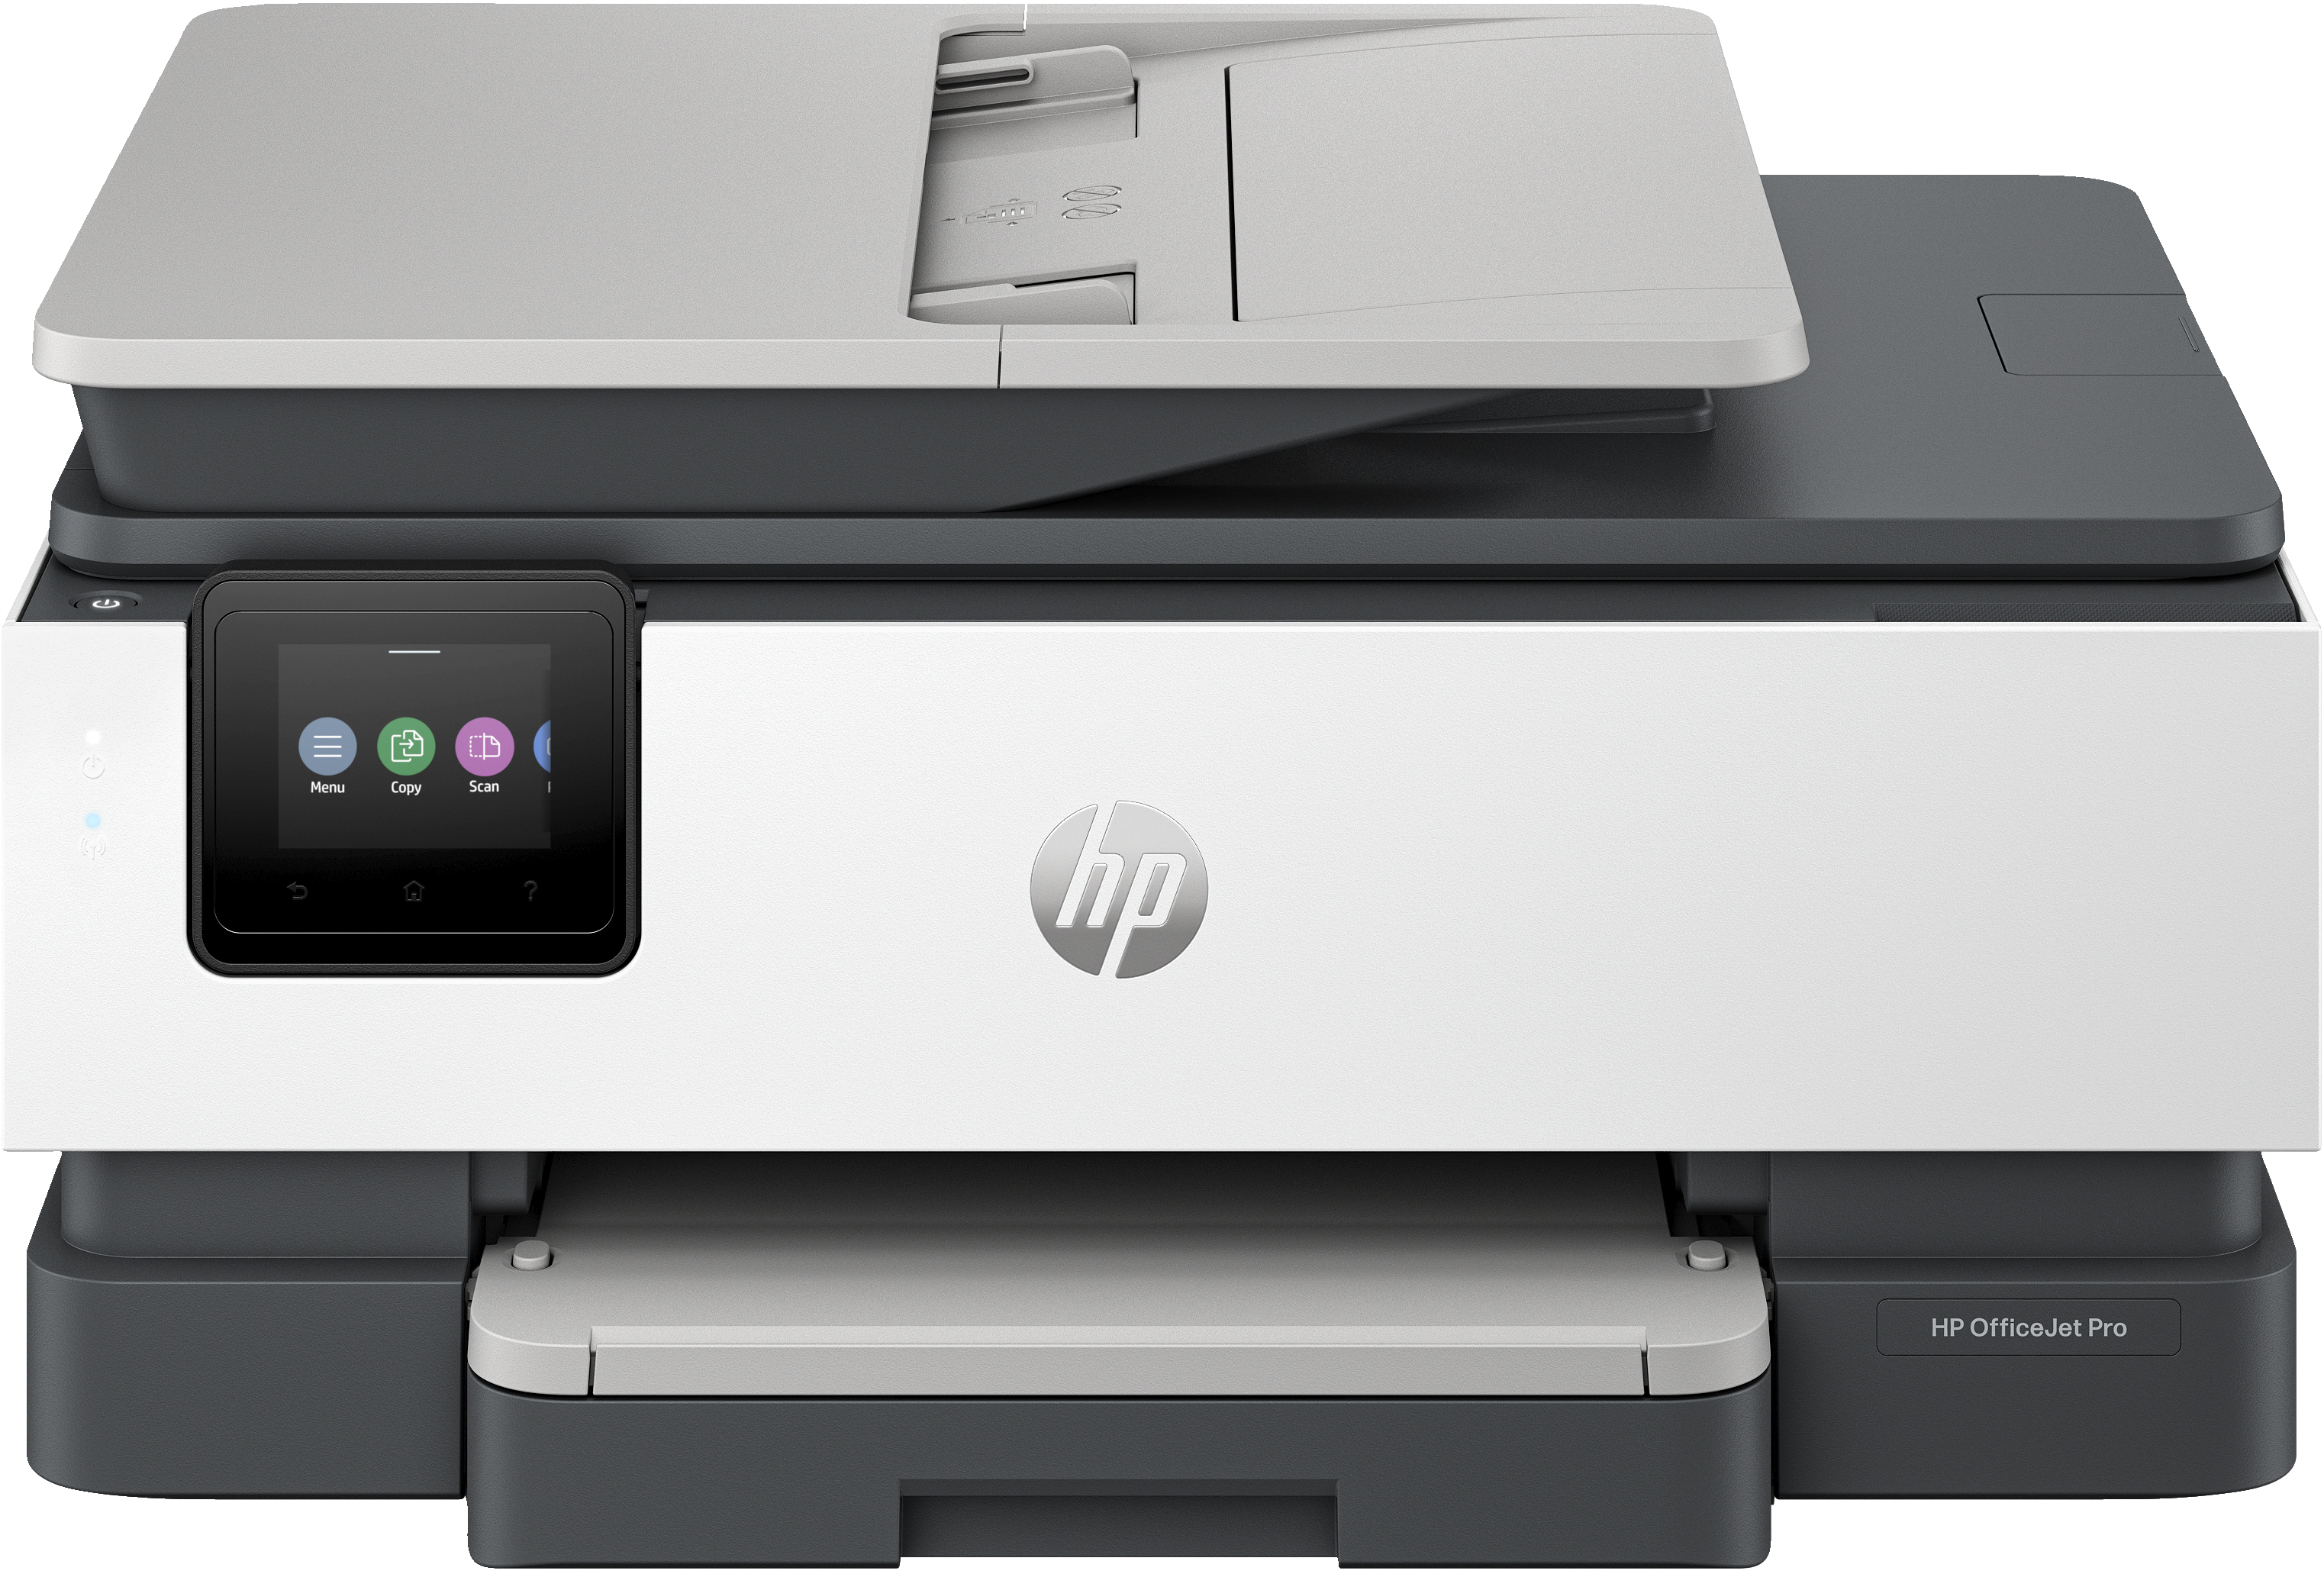 Image of HP OfficeJet Pro Stampante multifunzione HP 8132e, Colore, Stampante per Casa, Stampa, copia, scansione, fax, idonea a HP Instant Ink; alimentatore automatico di documenti; touchscreen; Modalità silenziosa; Stampa tramite VPN con HP+